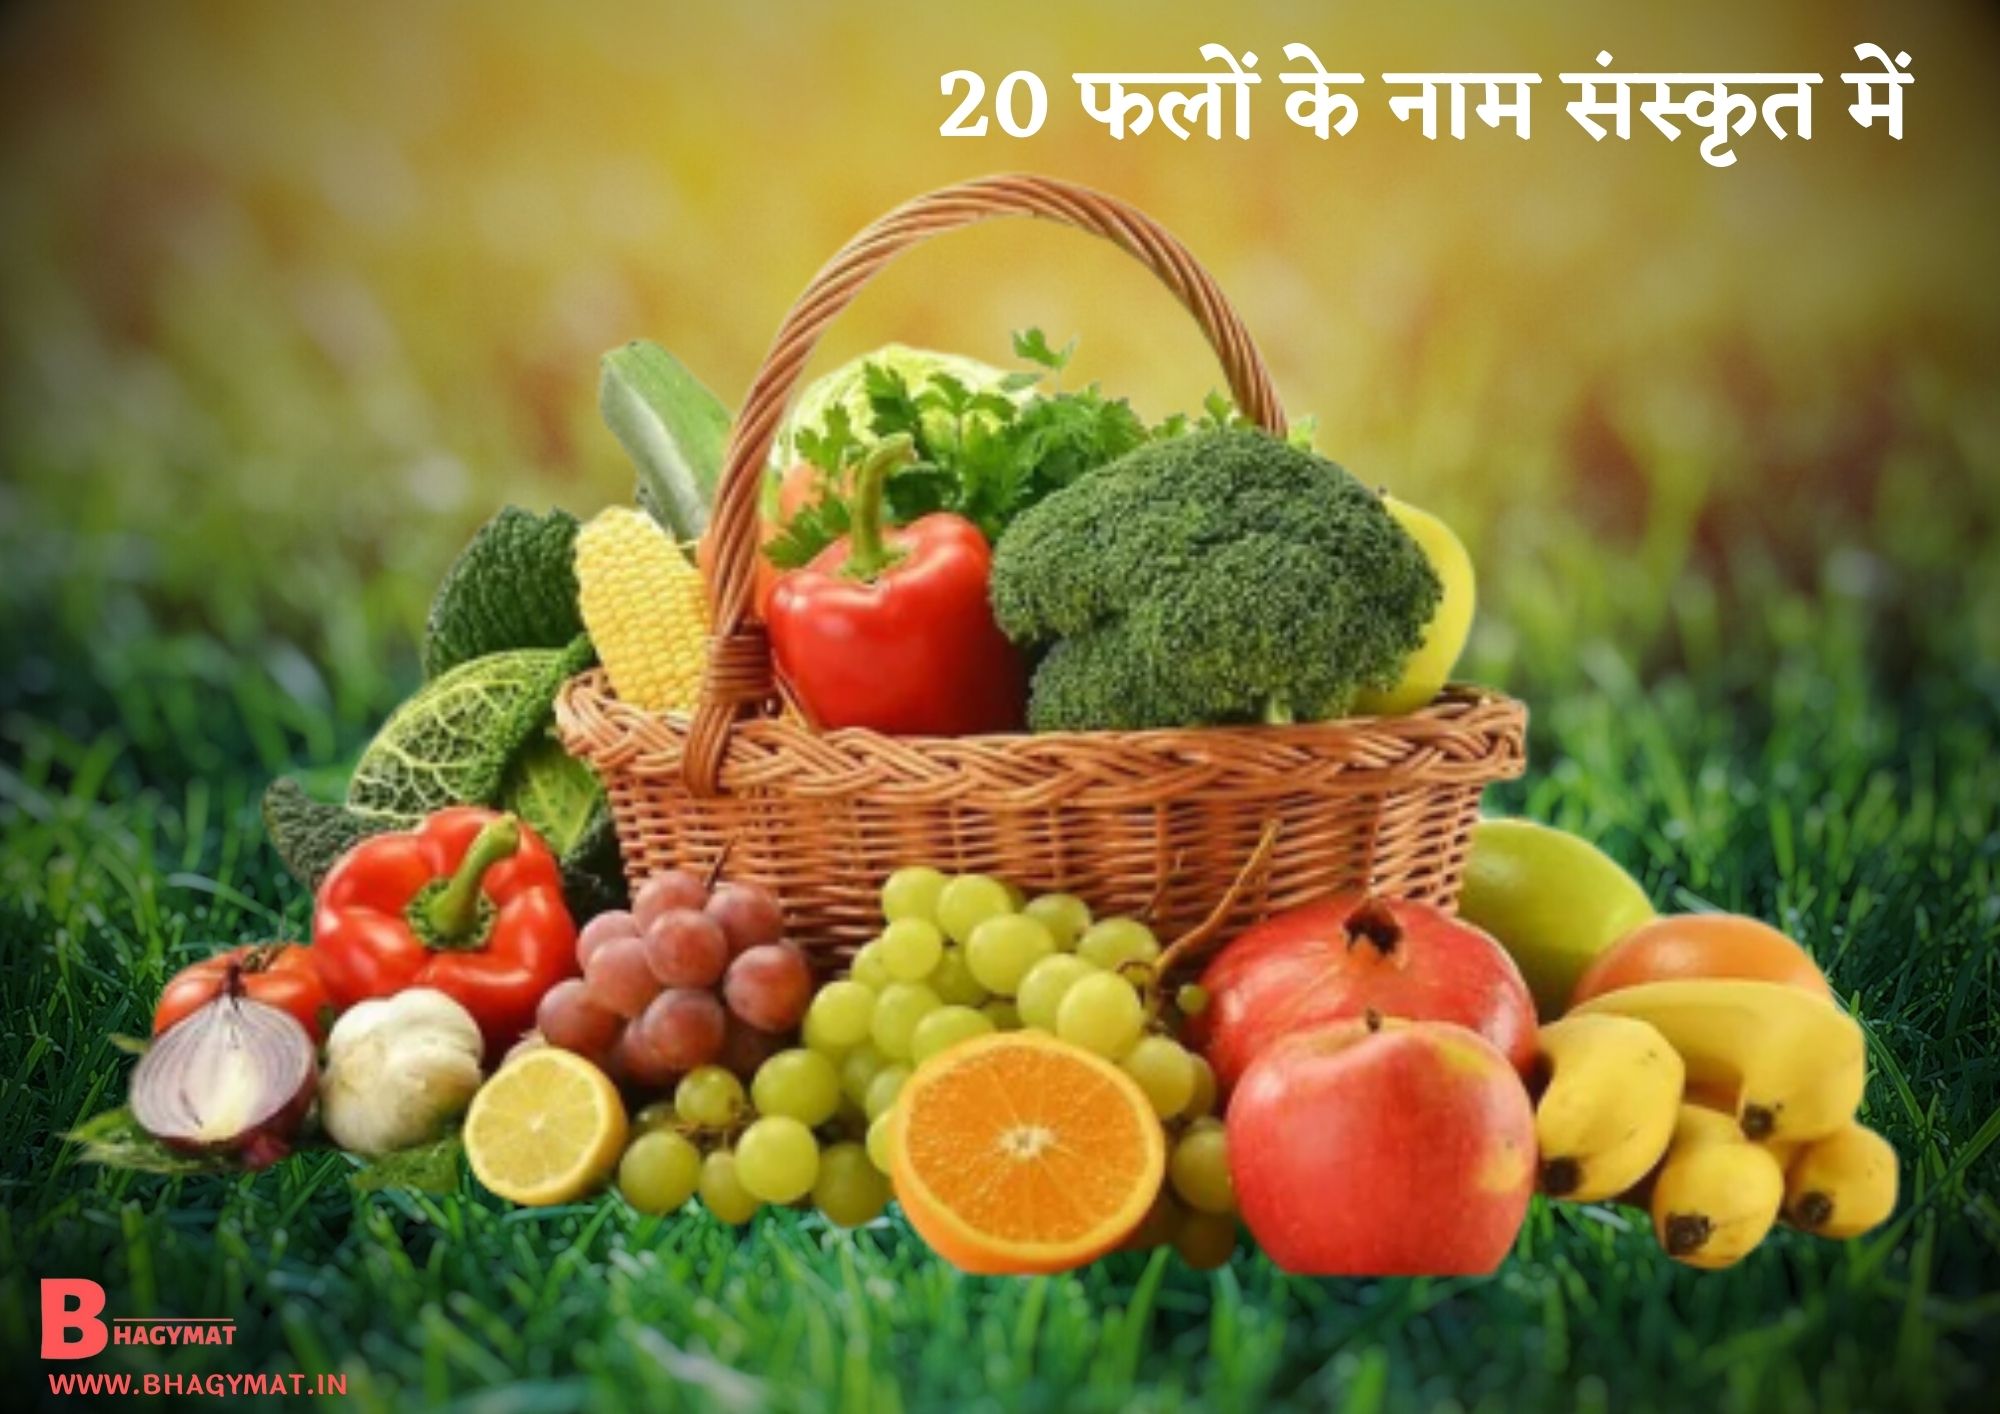 20 फलों के नाम संस्कृत में {संस्कृत में 20 फलों के नाम} (20 Falo Ke Naam Sanskrit Mein) - Sanskrit Mein 20 Falo Ke Naam